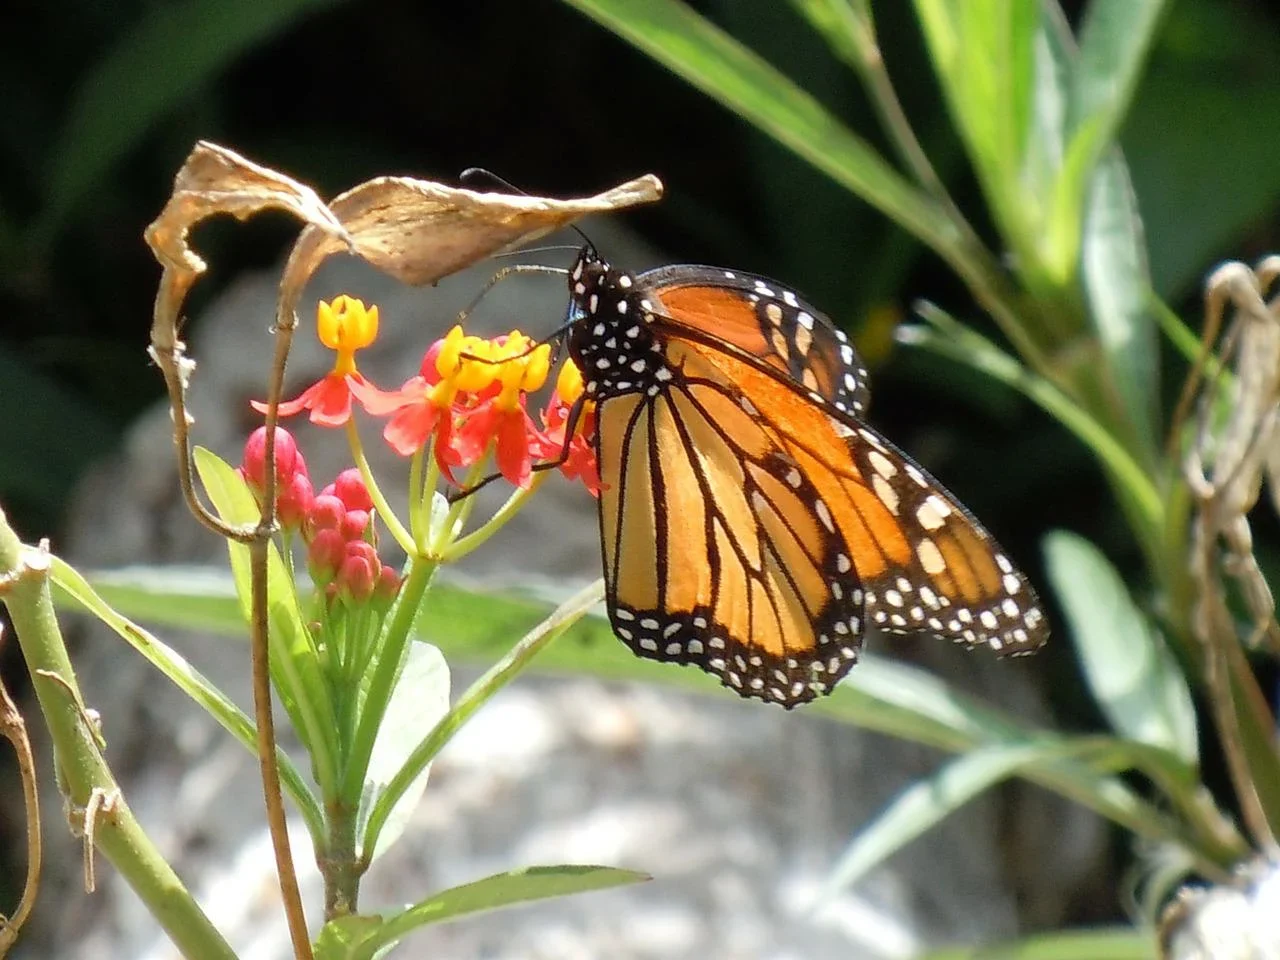 Le papillon monarque sera bientôt de retour : voici comment l'aider